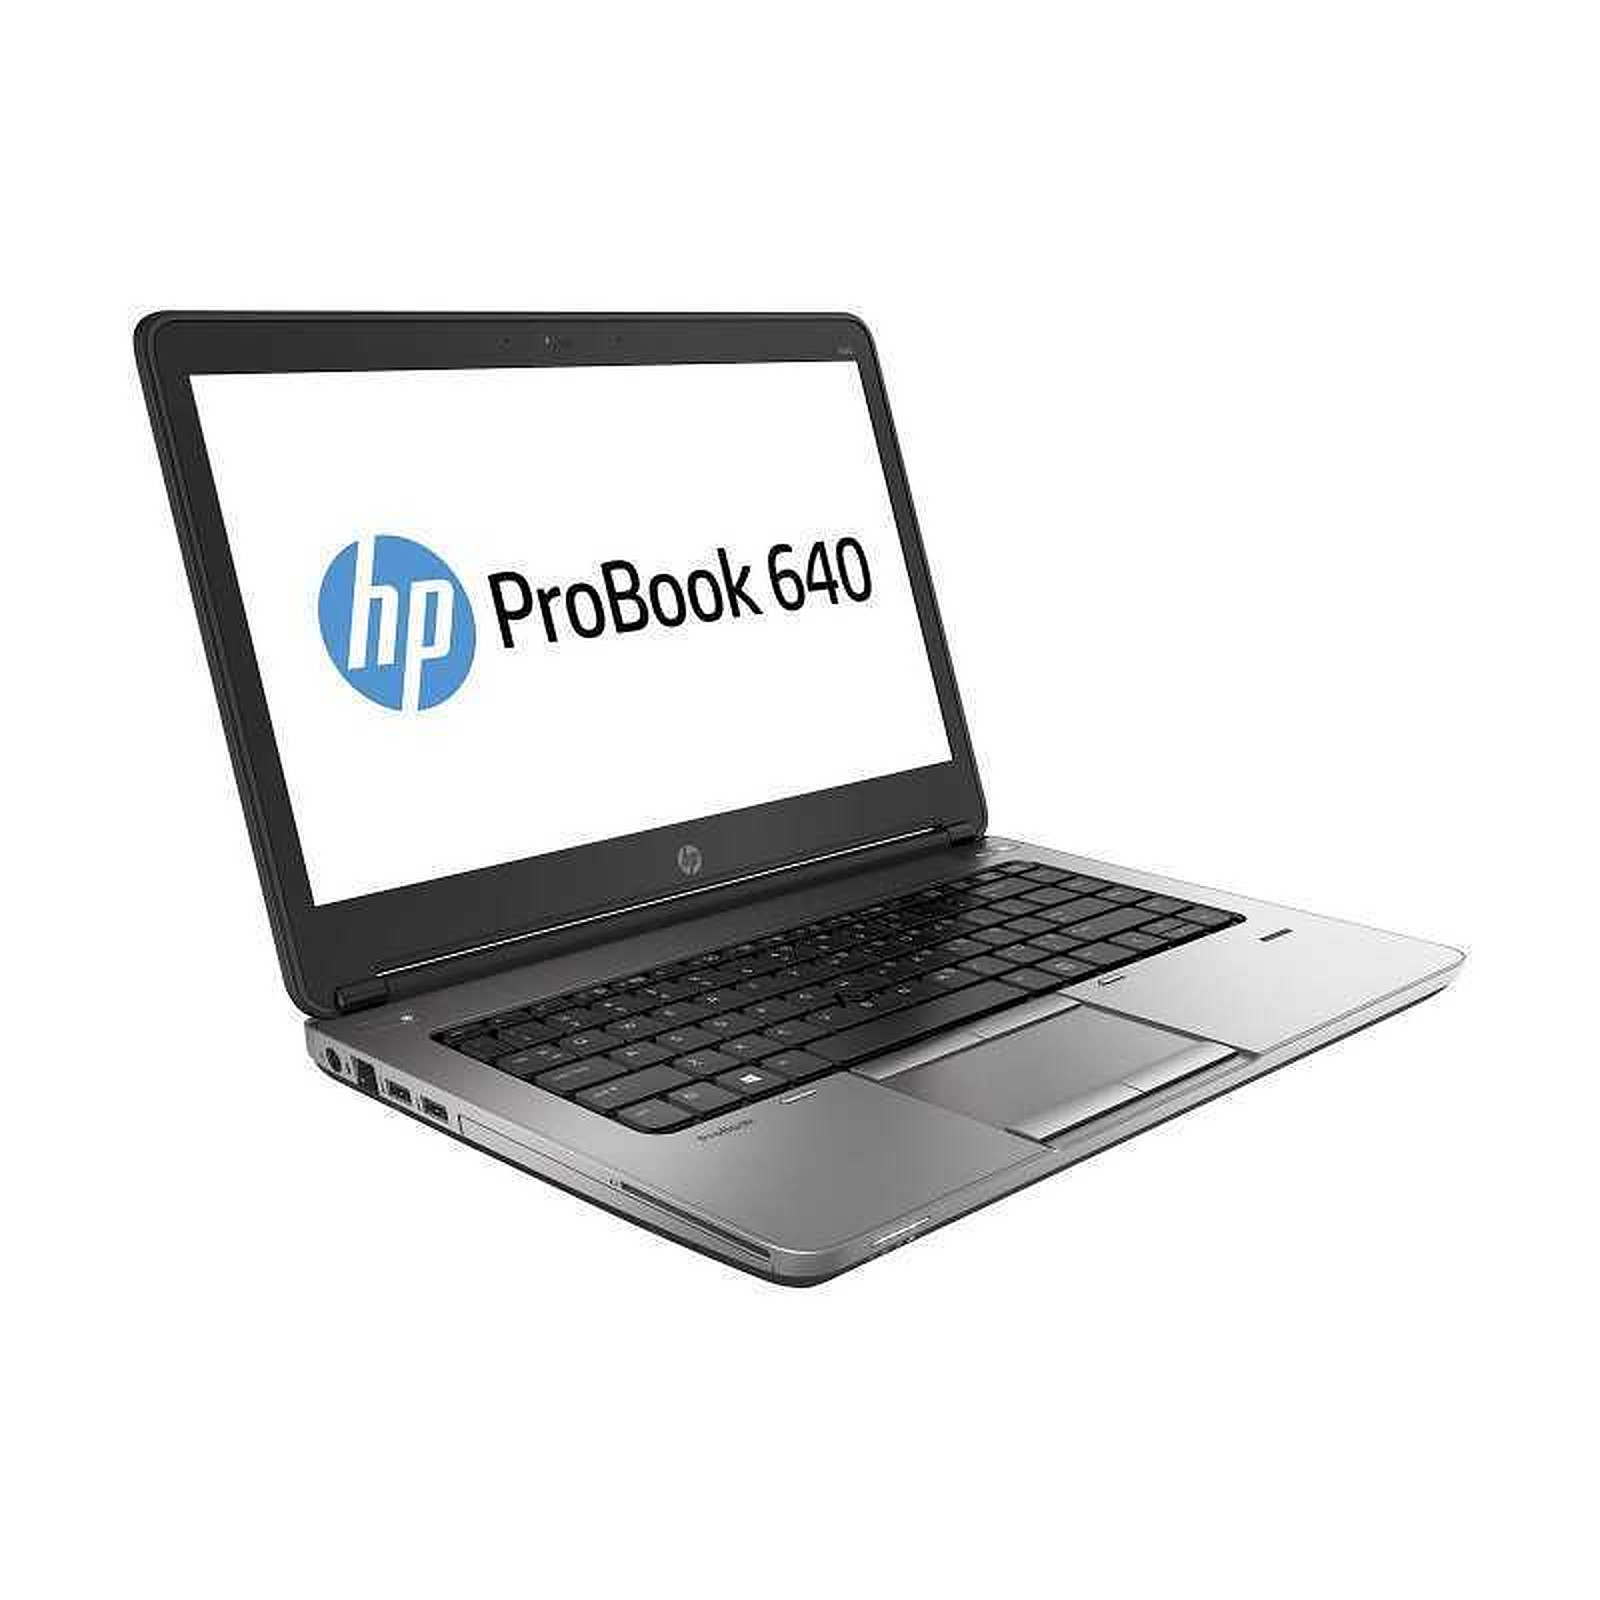 HP ProBook 640 G1 (D9R53AV-B-2138) (D9R53AV-B) · Reconditionne - PC portable reconditionne HP